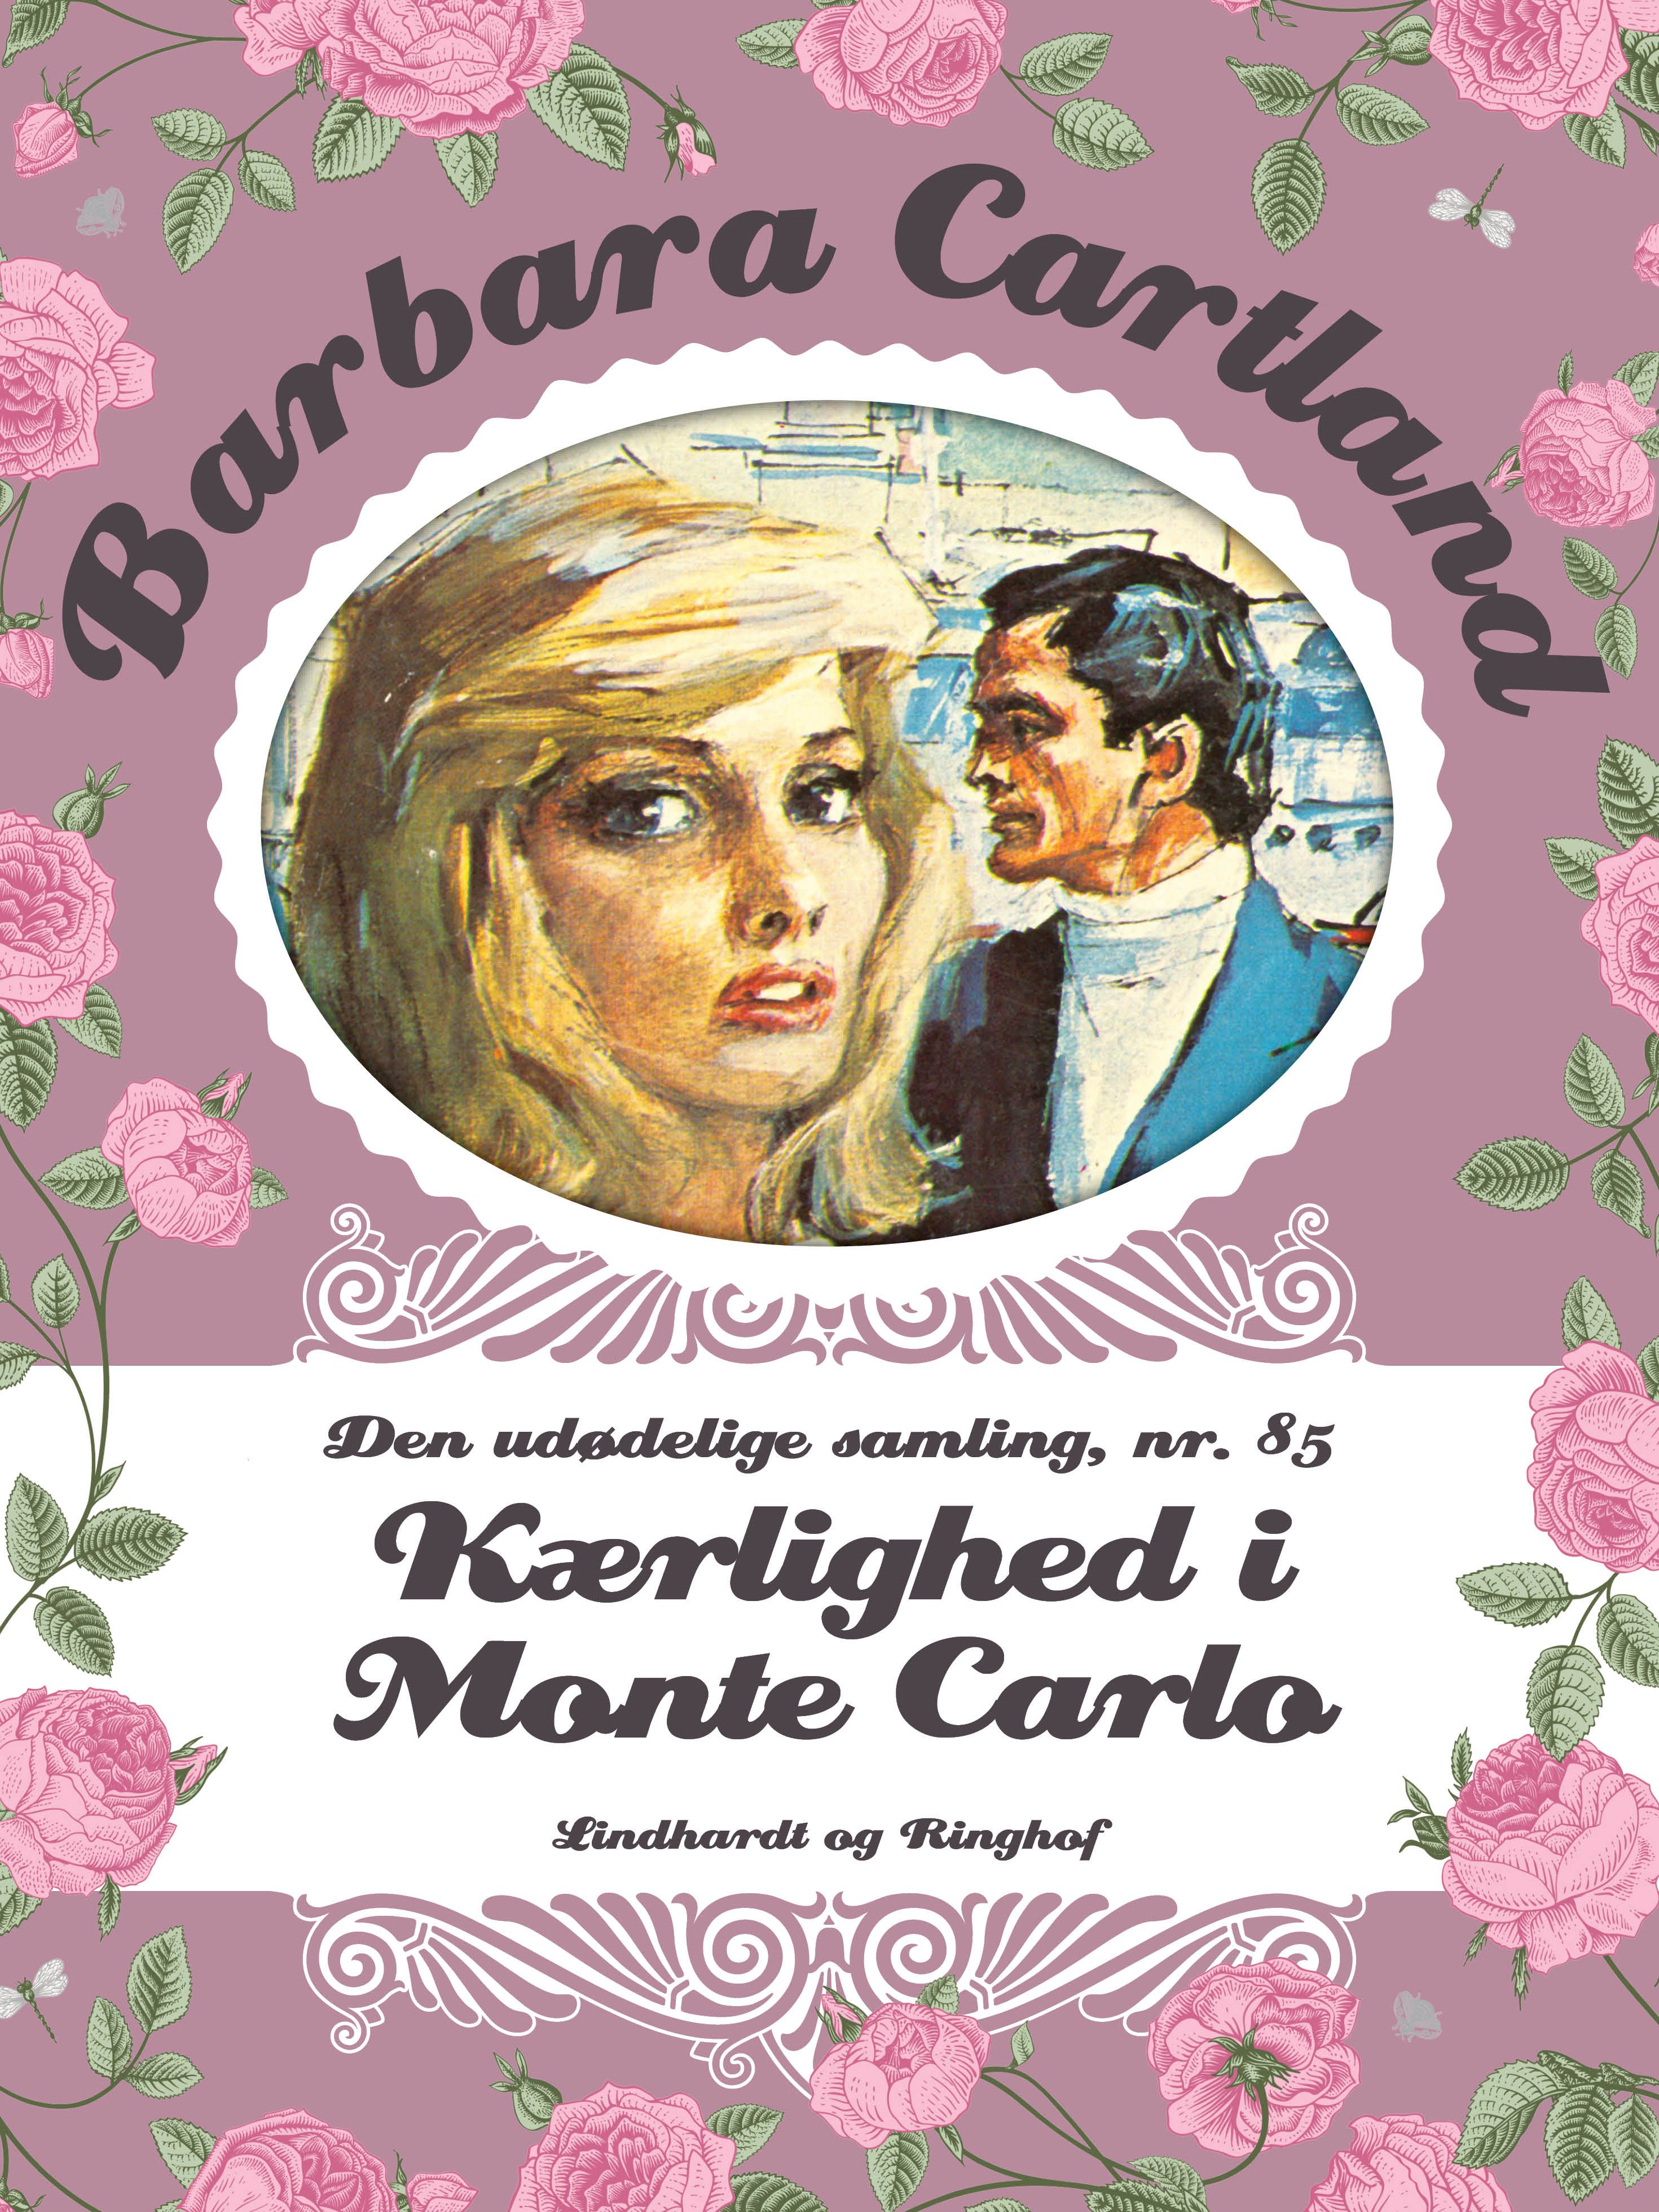 Kærlighed i Monte Carlo, lydbog af Barbara Cartland